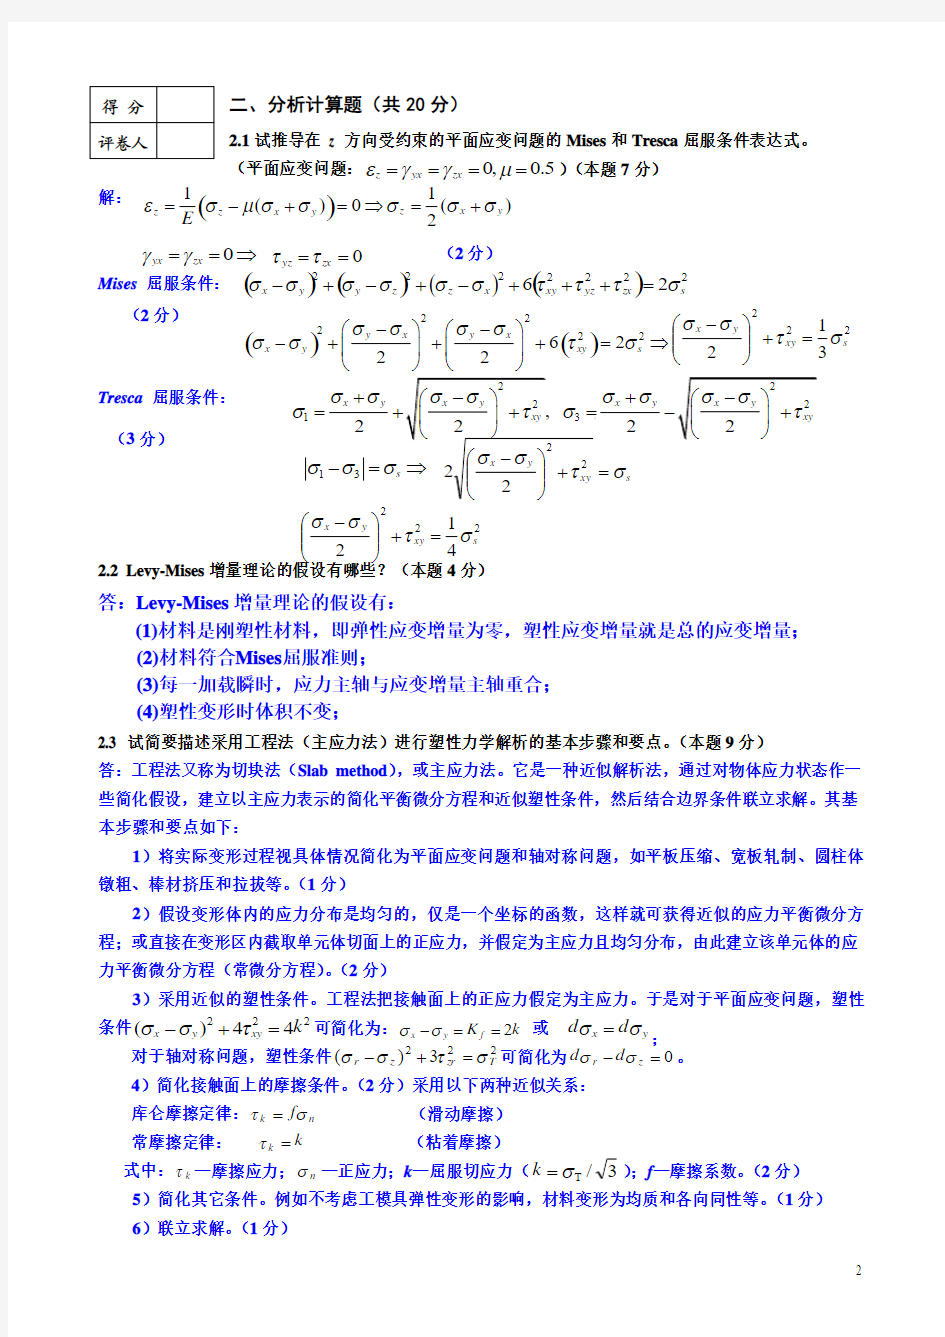 中南大学金属塑性加工原理试题答案-2013.12